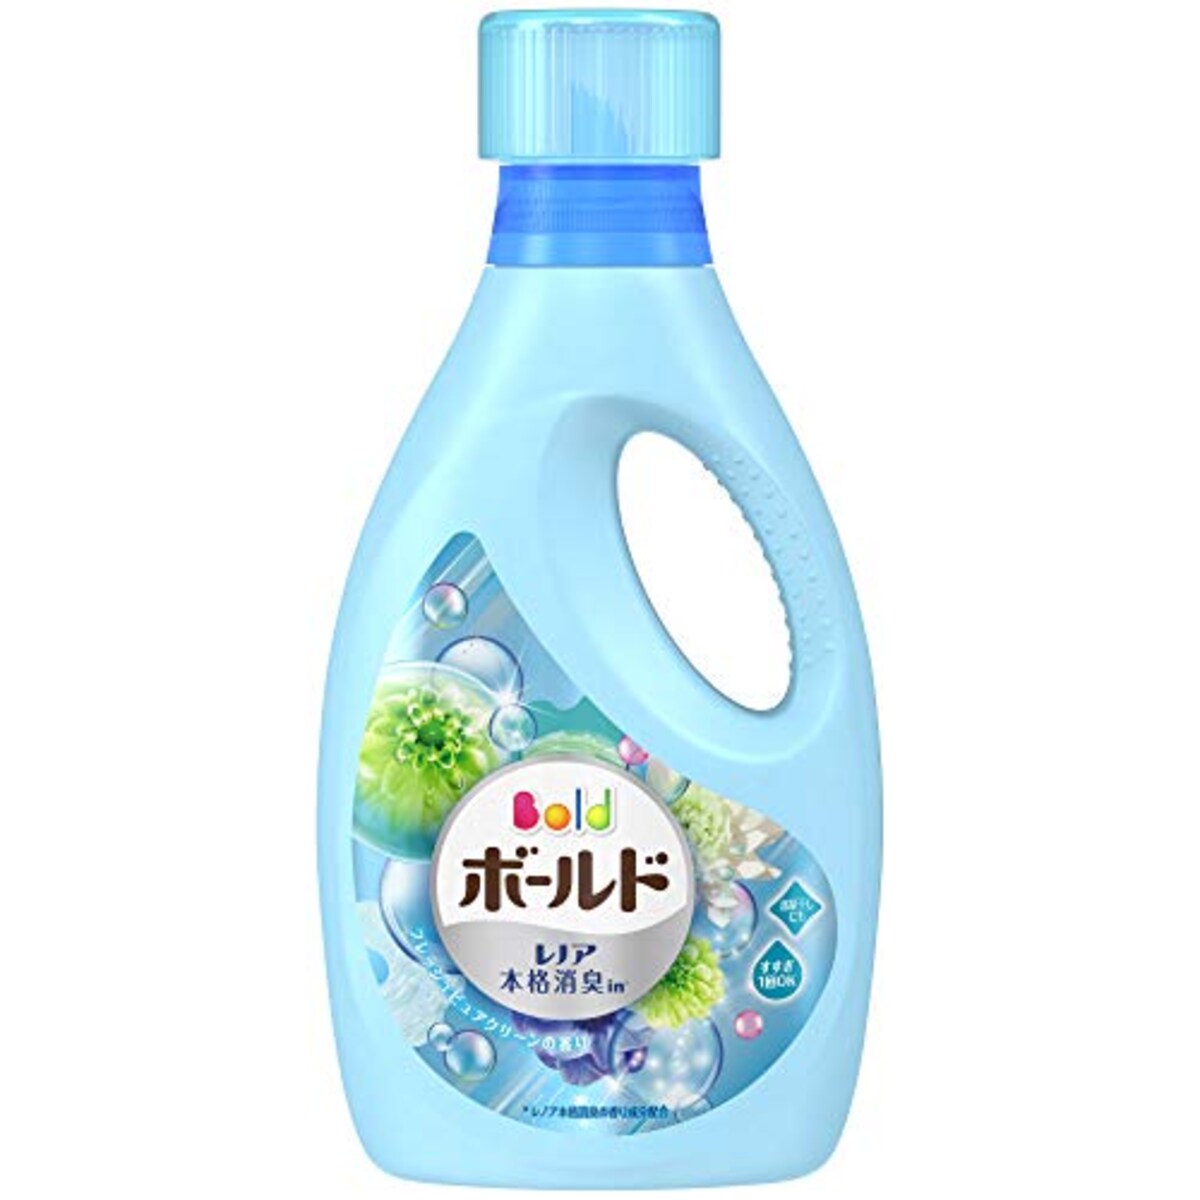  ボールド 洗濯洗剤 液体 プラチナクリーン プラチナピュアクリーンの香り 本体 850g画像2 